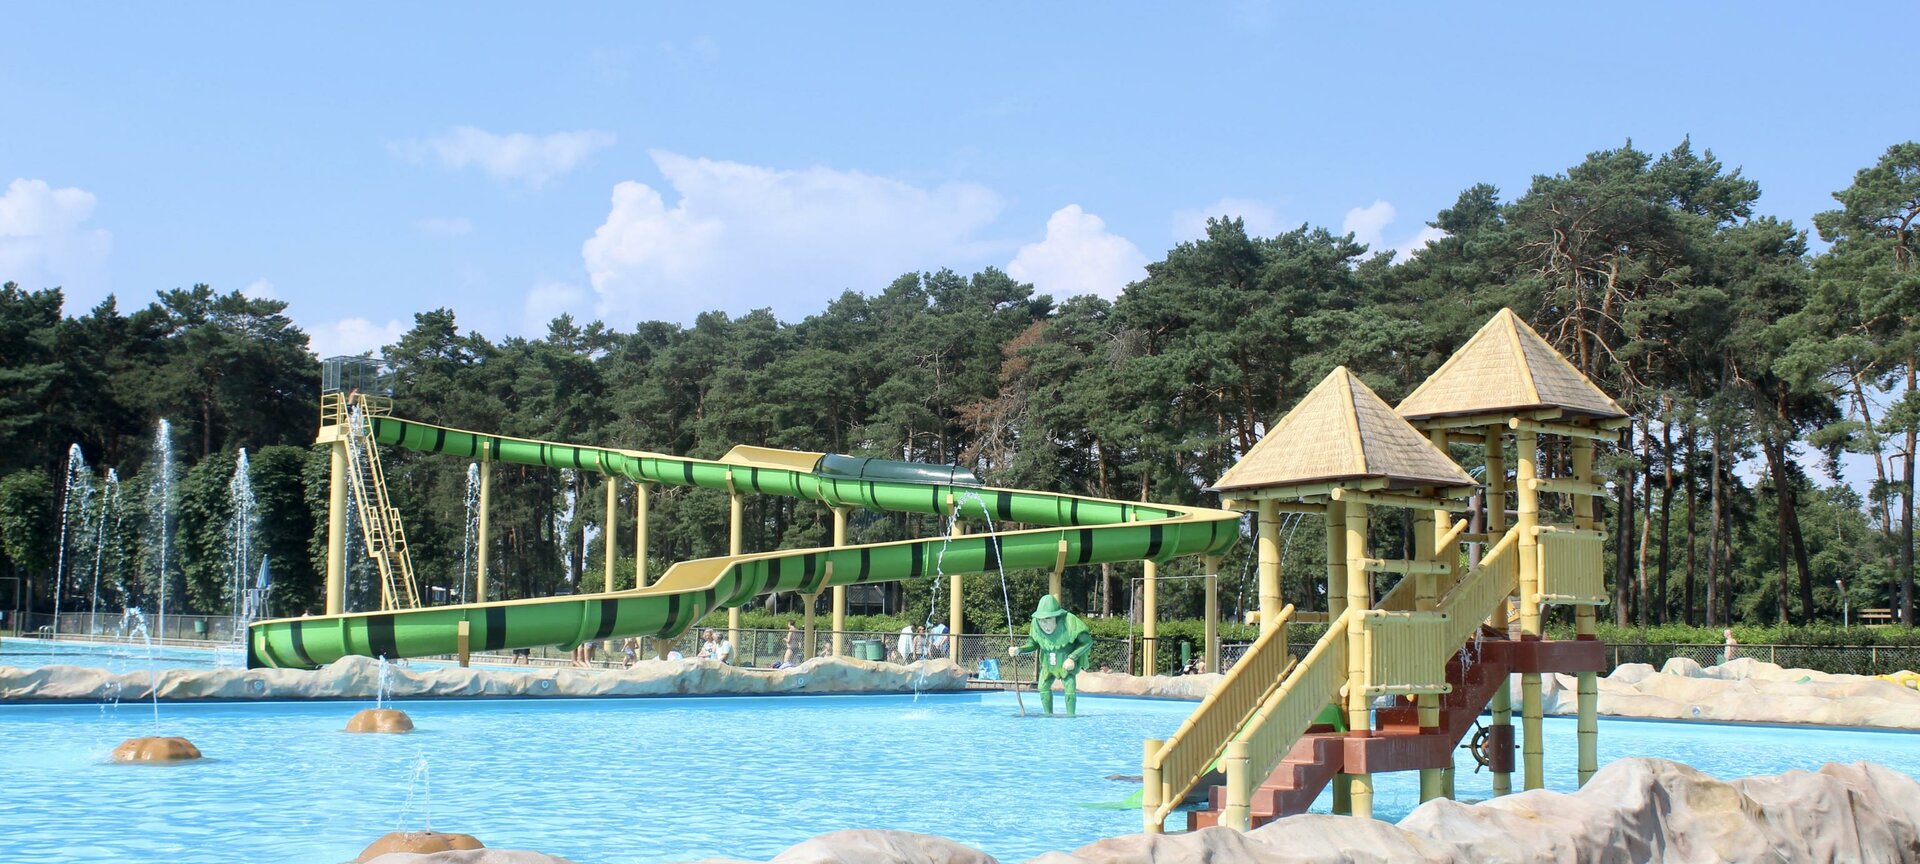 Familiepark Goolderheide - Zwembad